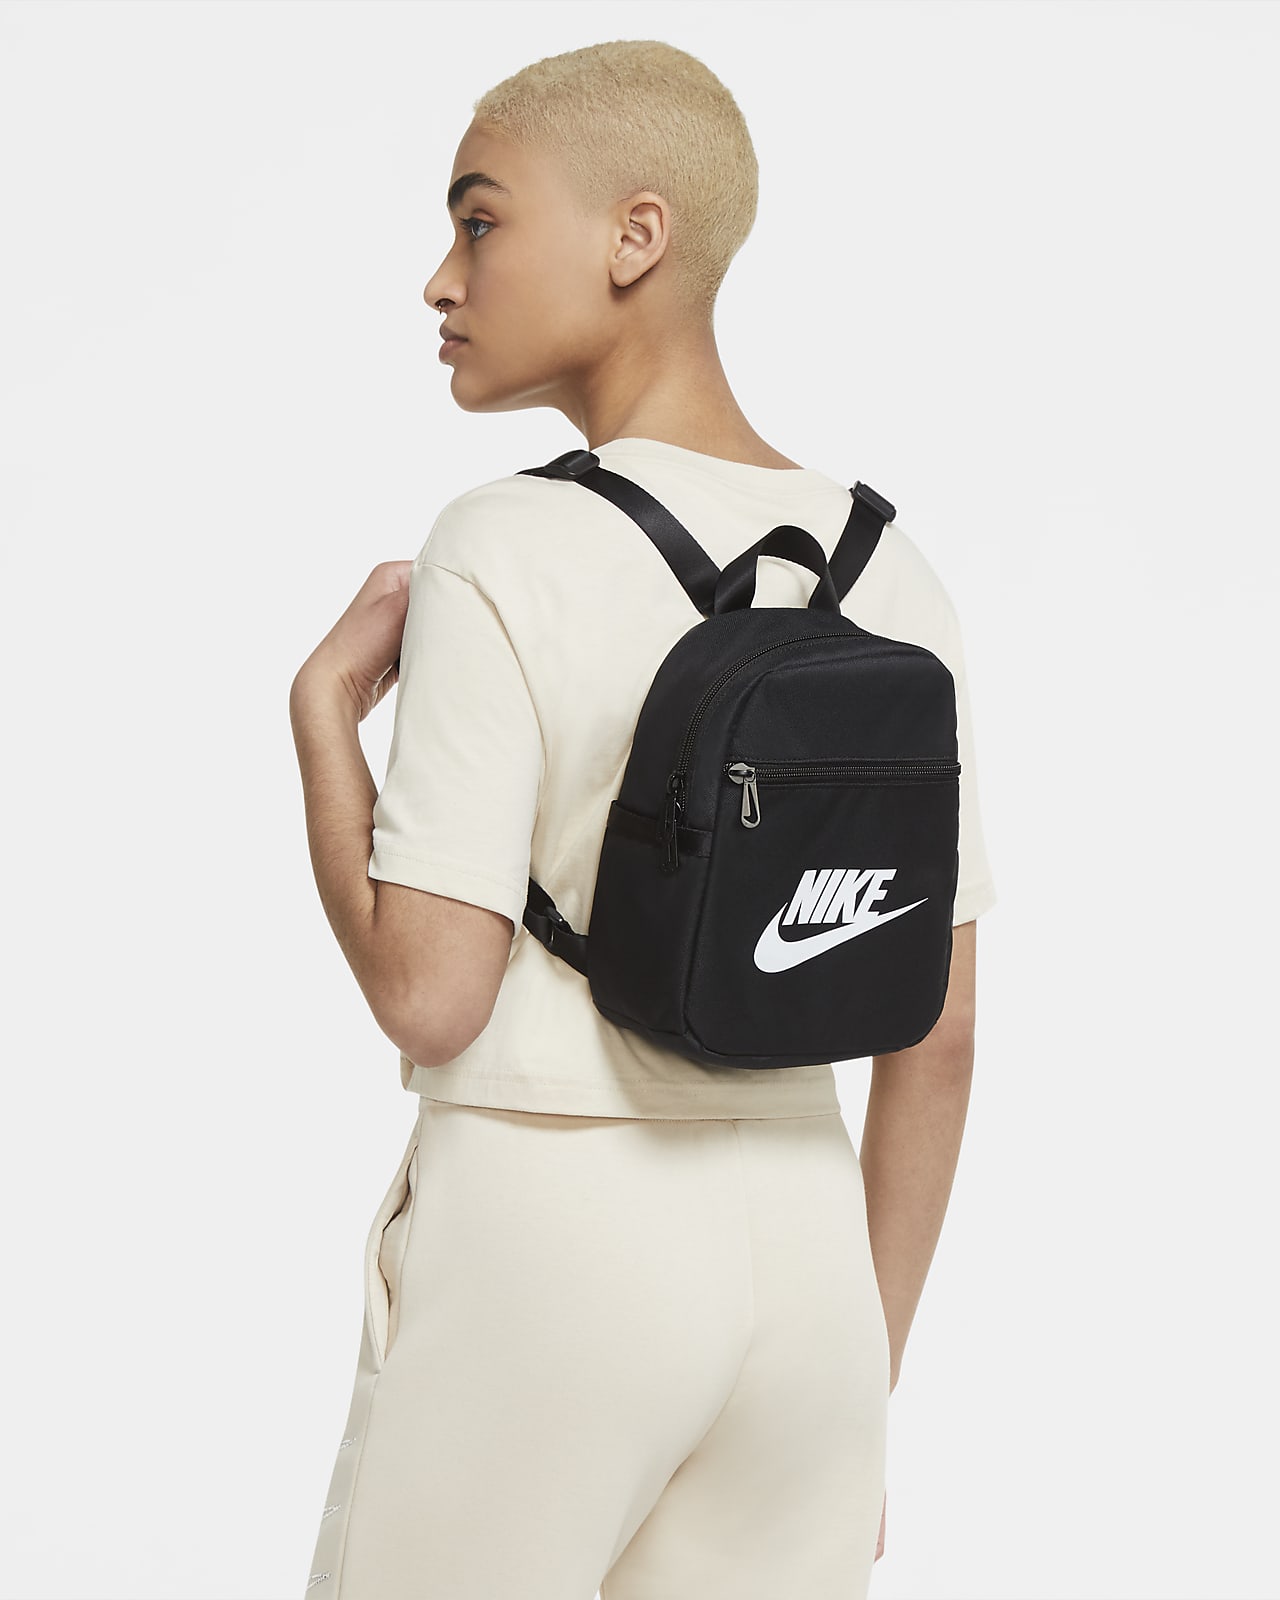 Liten ryggsäck Nike Sportswear Futura 365 för kvinnor (6 l)